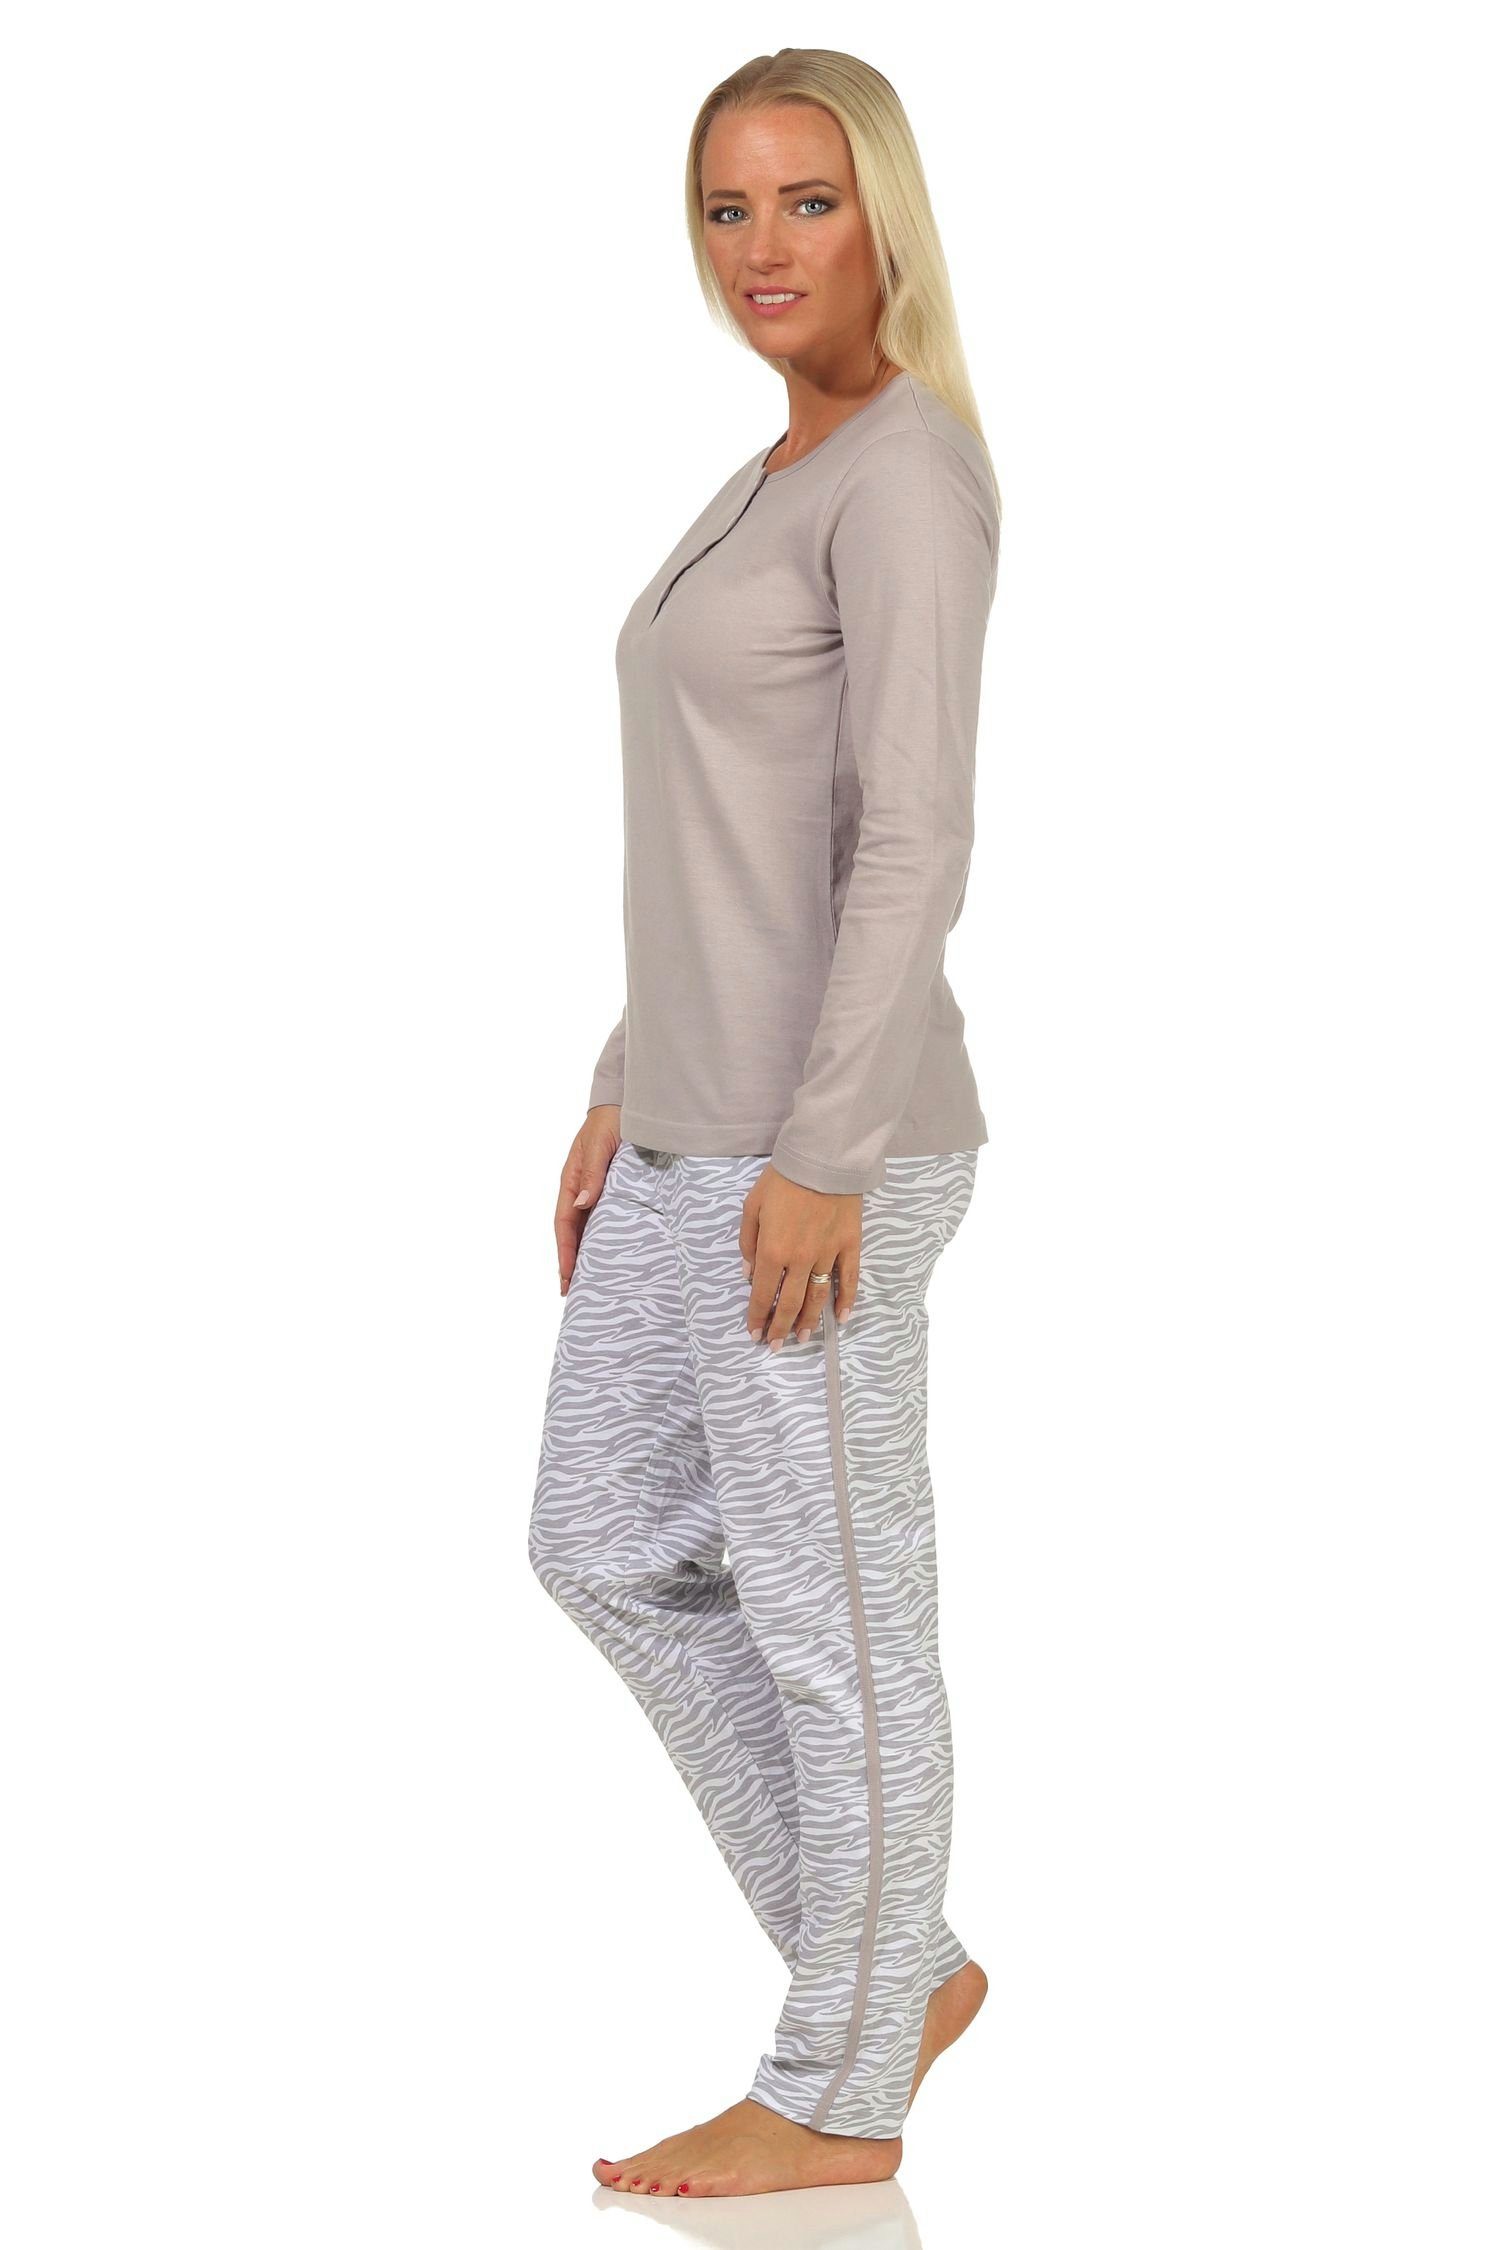 Damen grau langarm seitlichen Bein Pyjama Pyjama am + Animal-Muster Streifen Normann mit